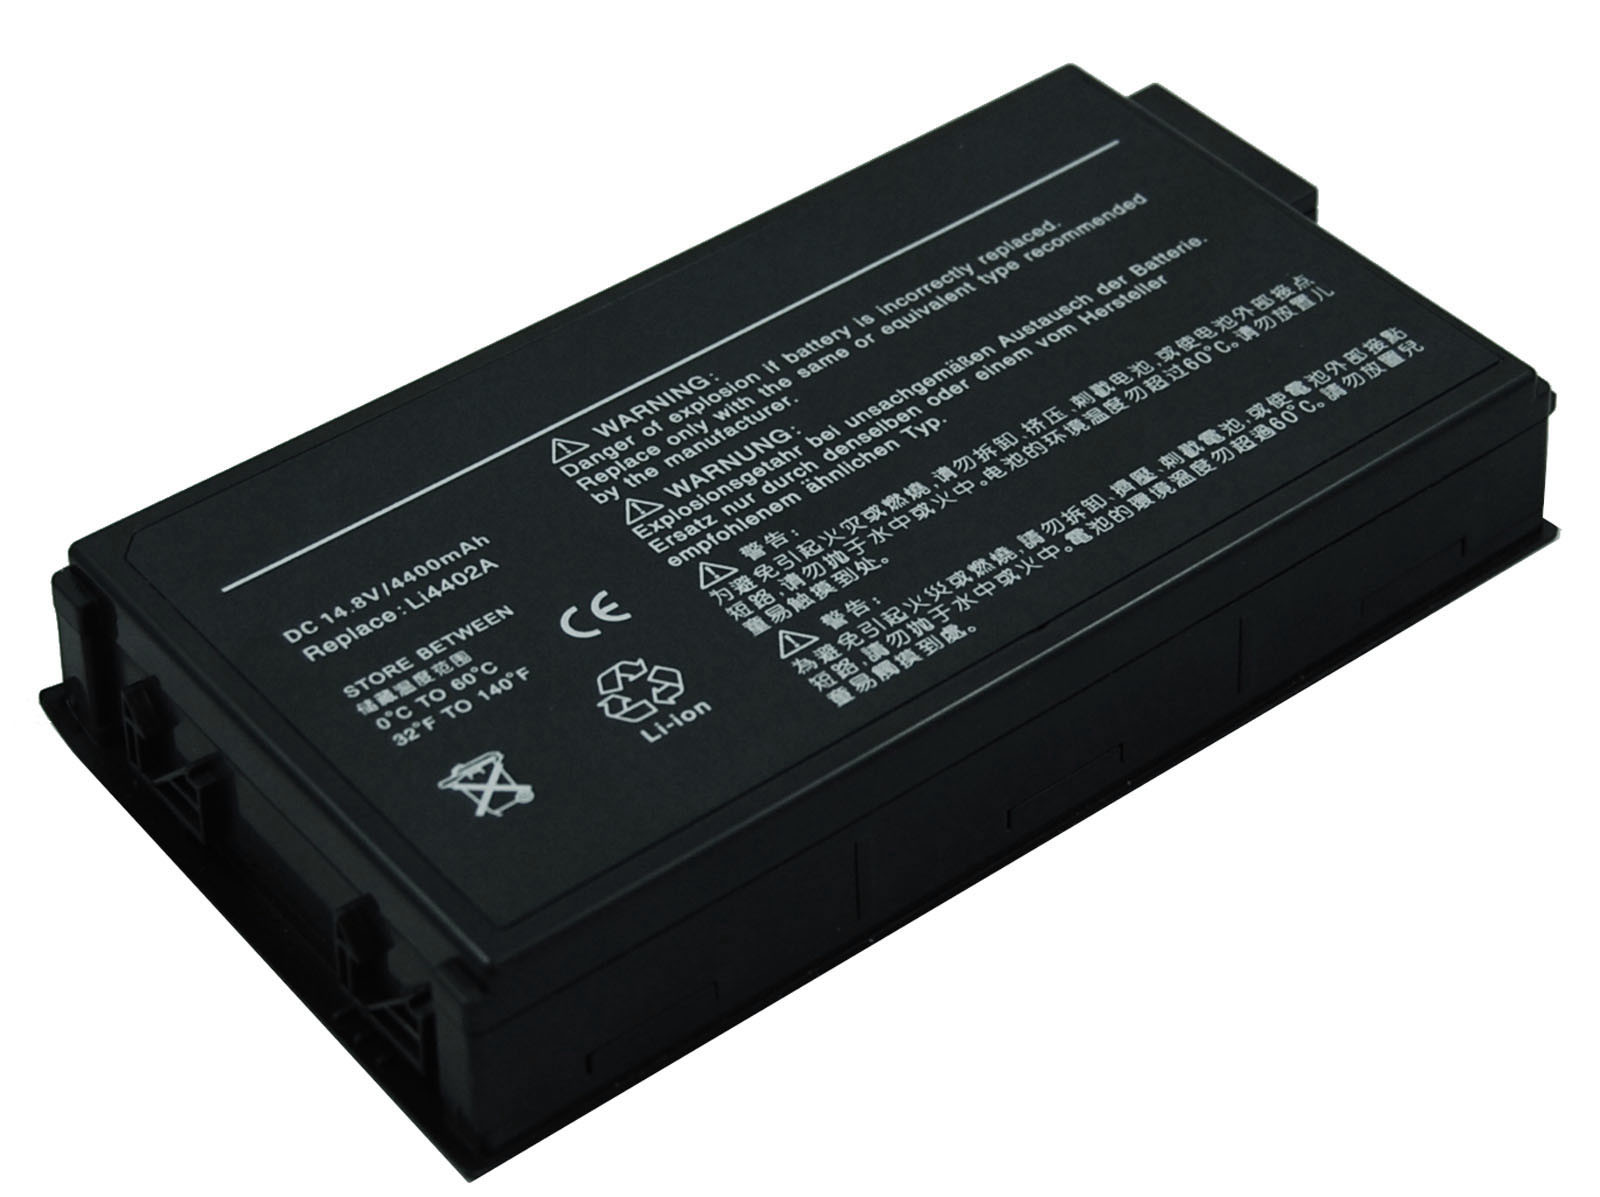 Laptop Battery for Gateway 7110GX Series (101339)